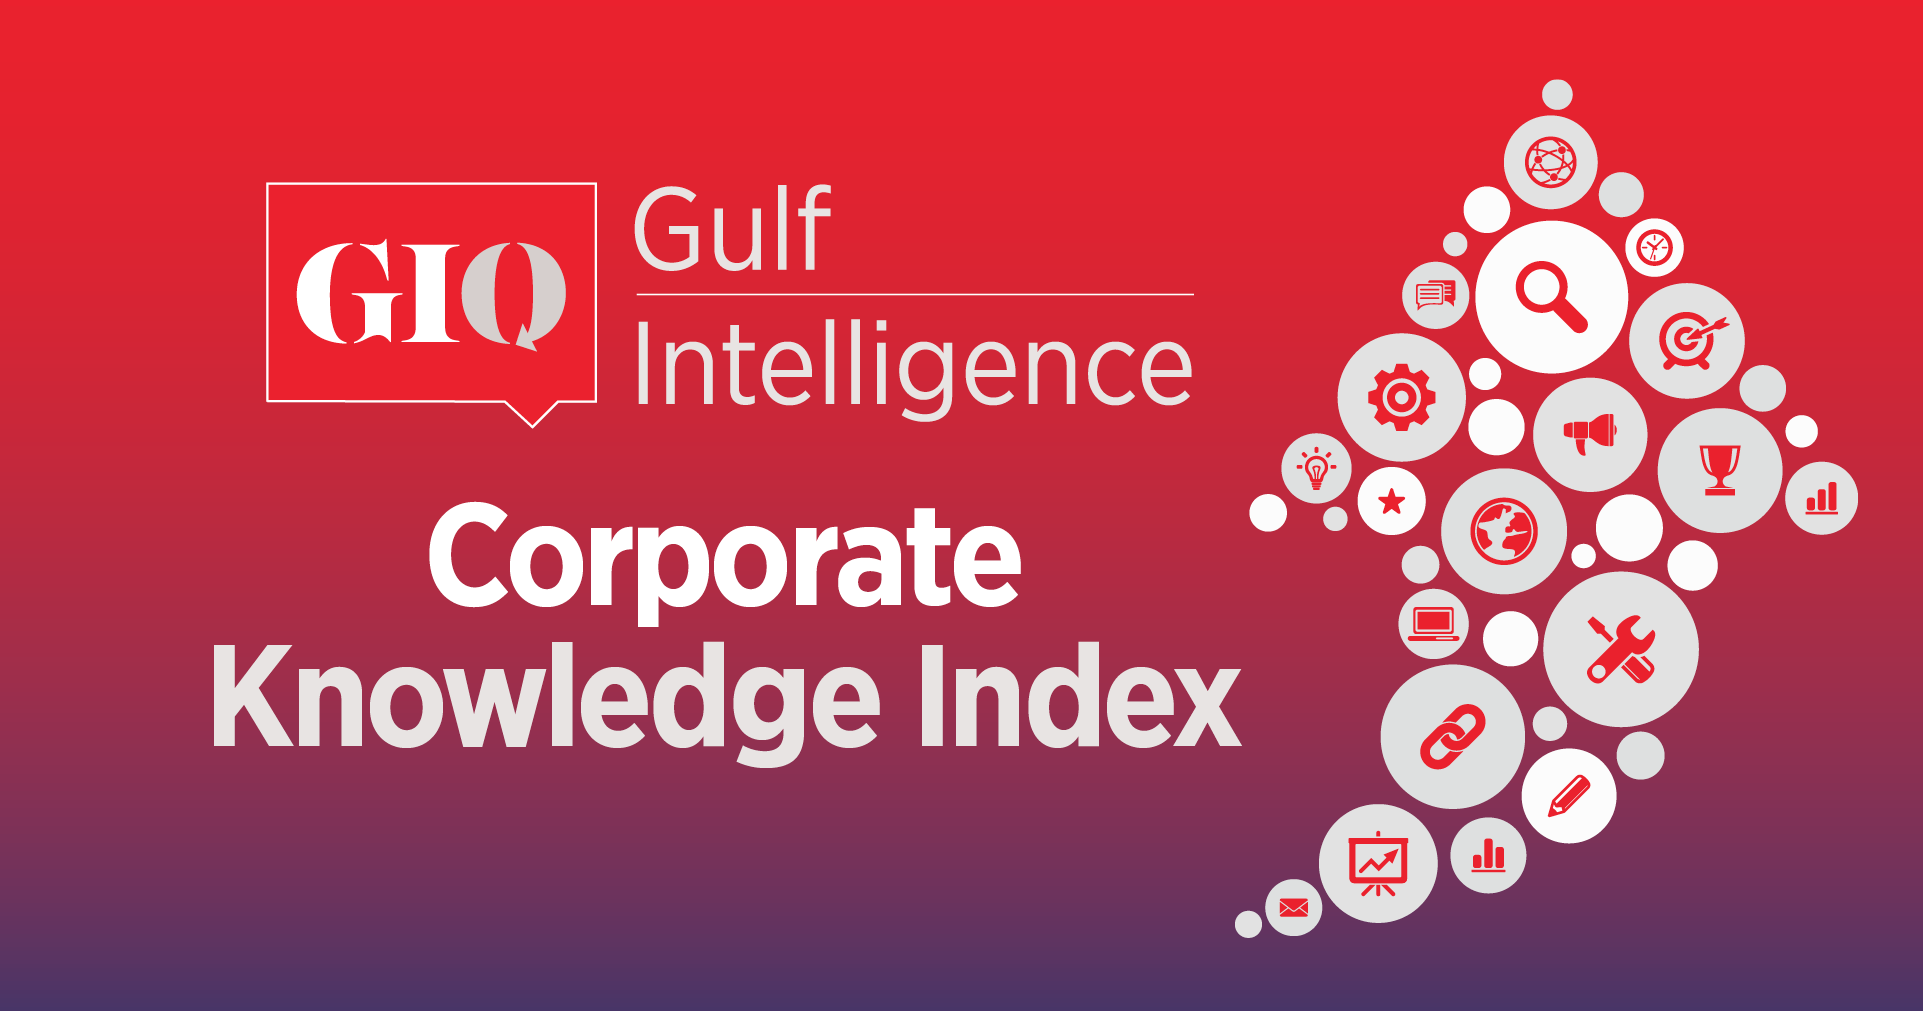 GIQ Corporate Knowledge Index